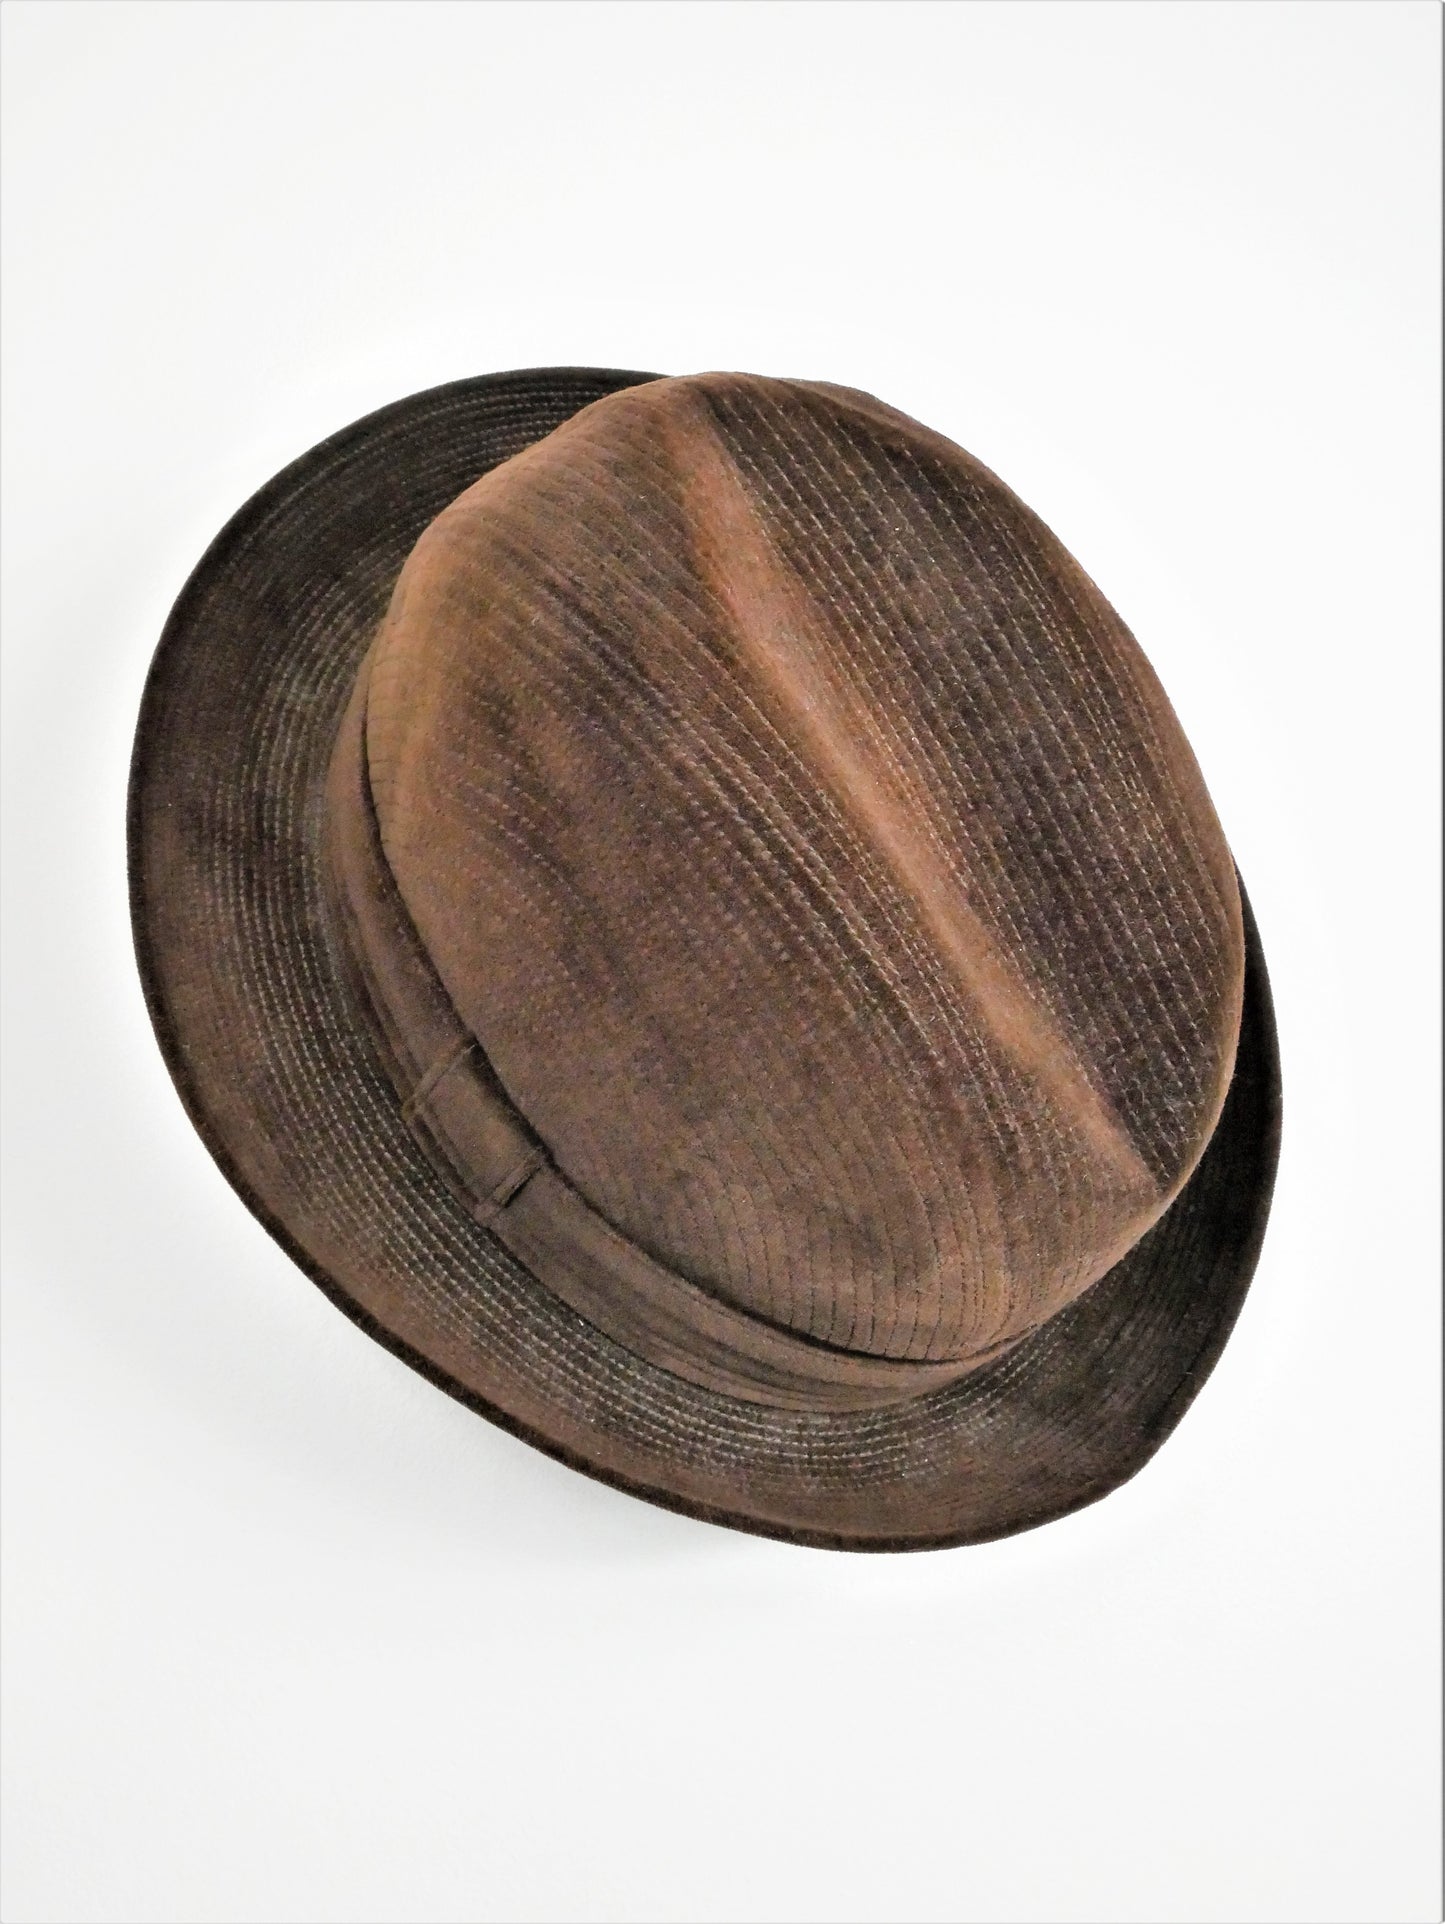 Gélot (France) Hatt